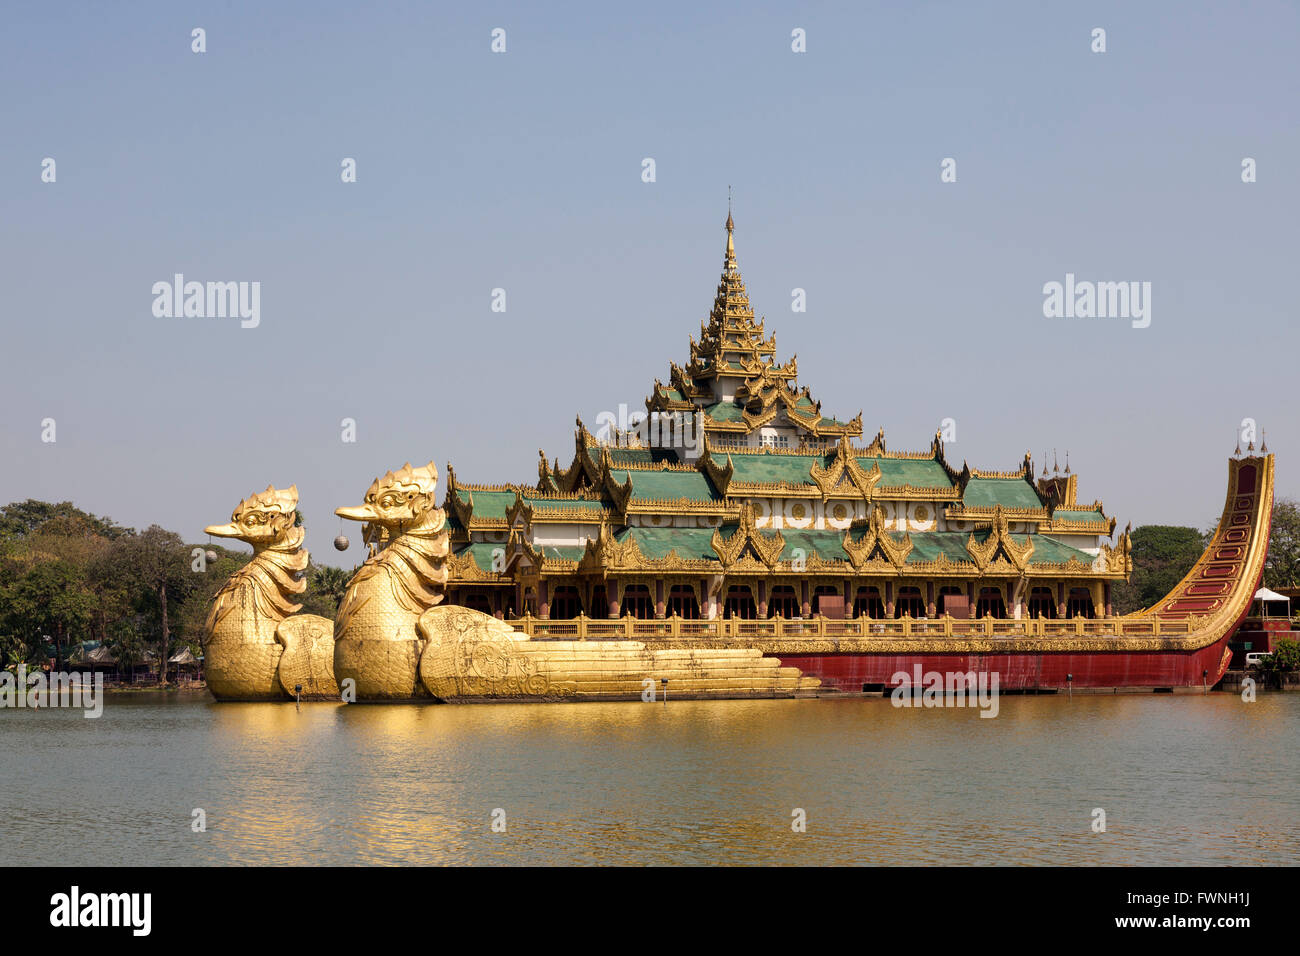 Sur la rive orientale de la Lac Kandawgyi (Yangon), le Crazy Karaweik Hall est la copie de la barge royale. Banque D'Images